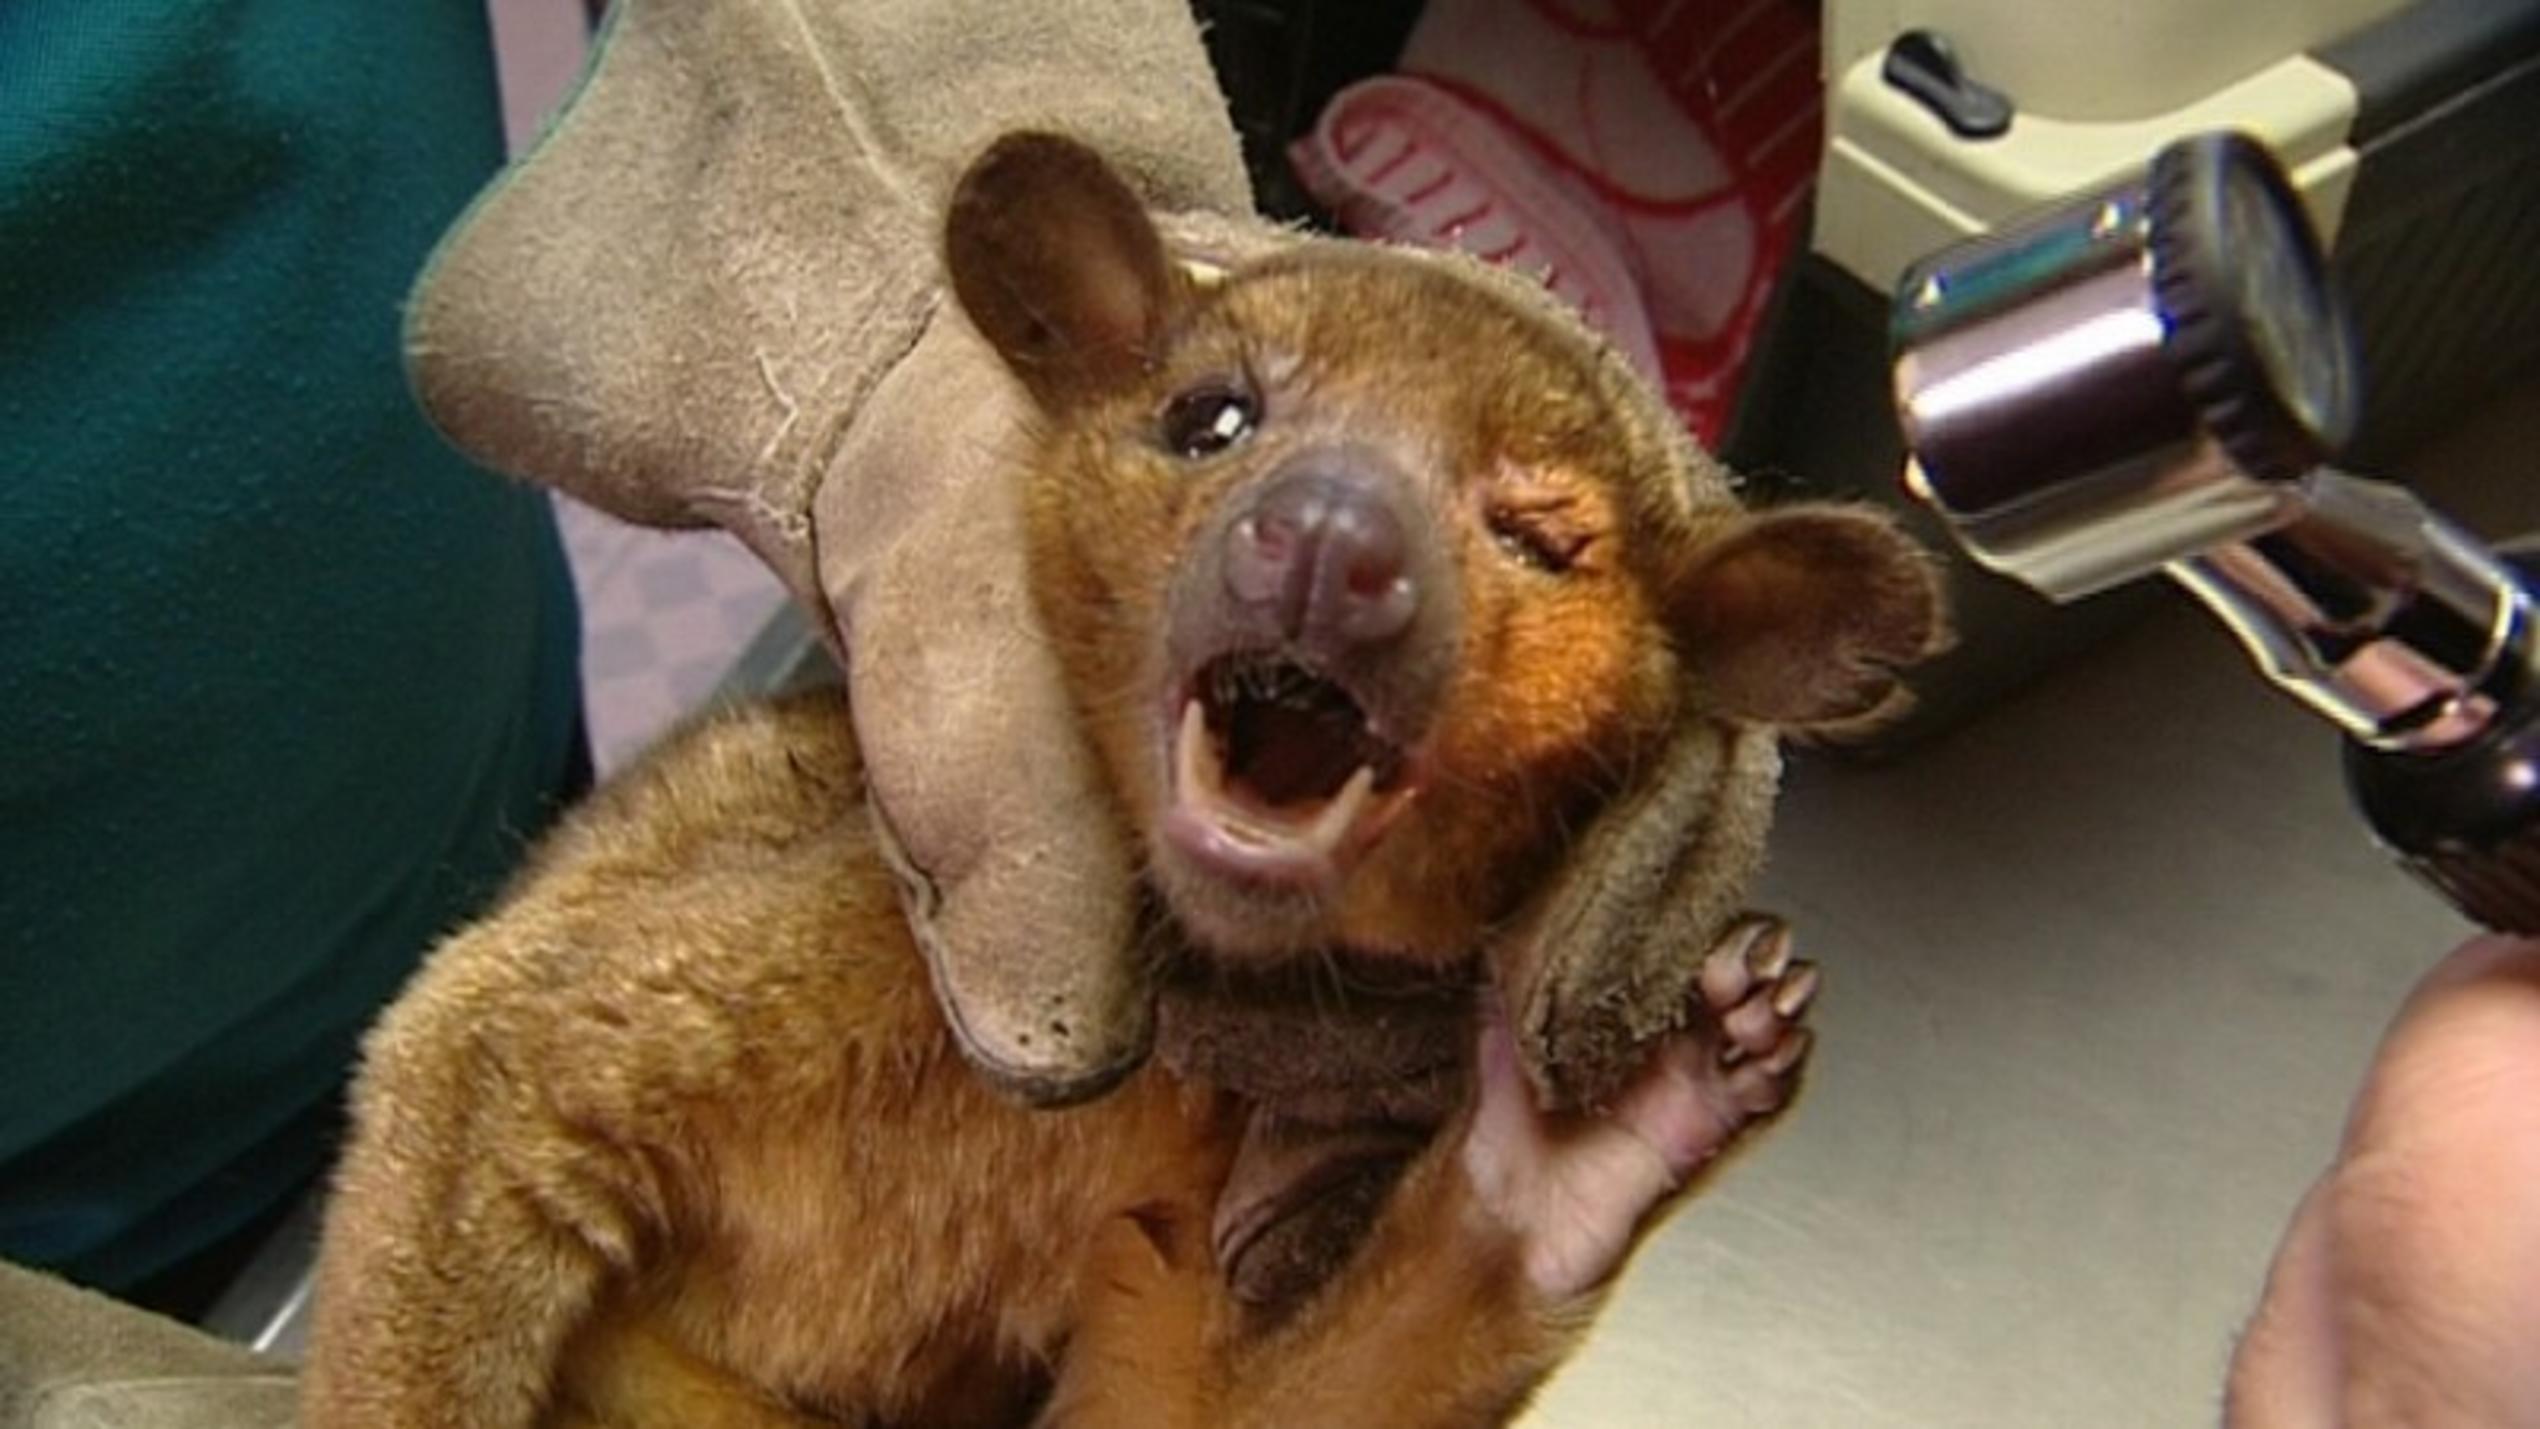 hundkatzemaus-Tierarzt Dr. Wolf behandelt einen Wickelbären